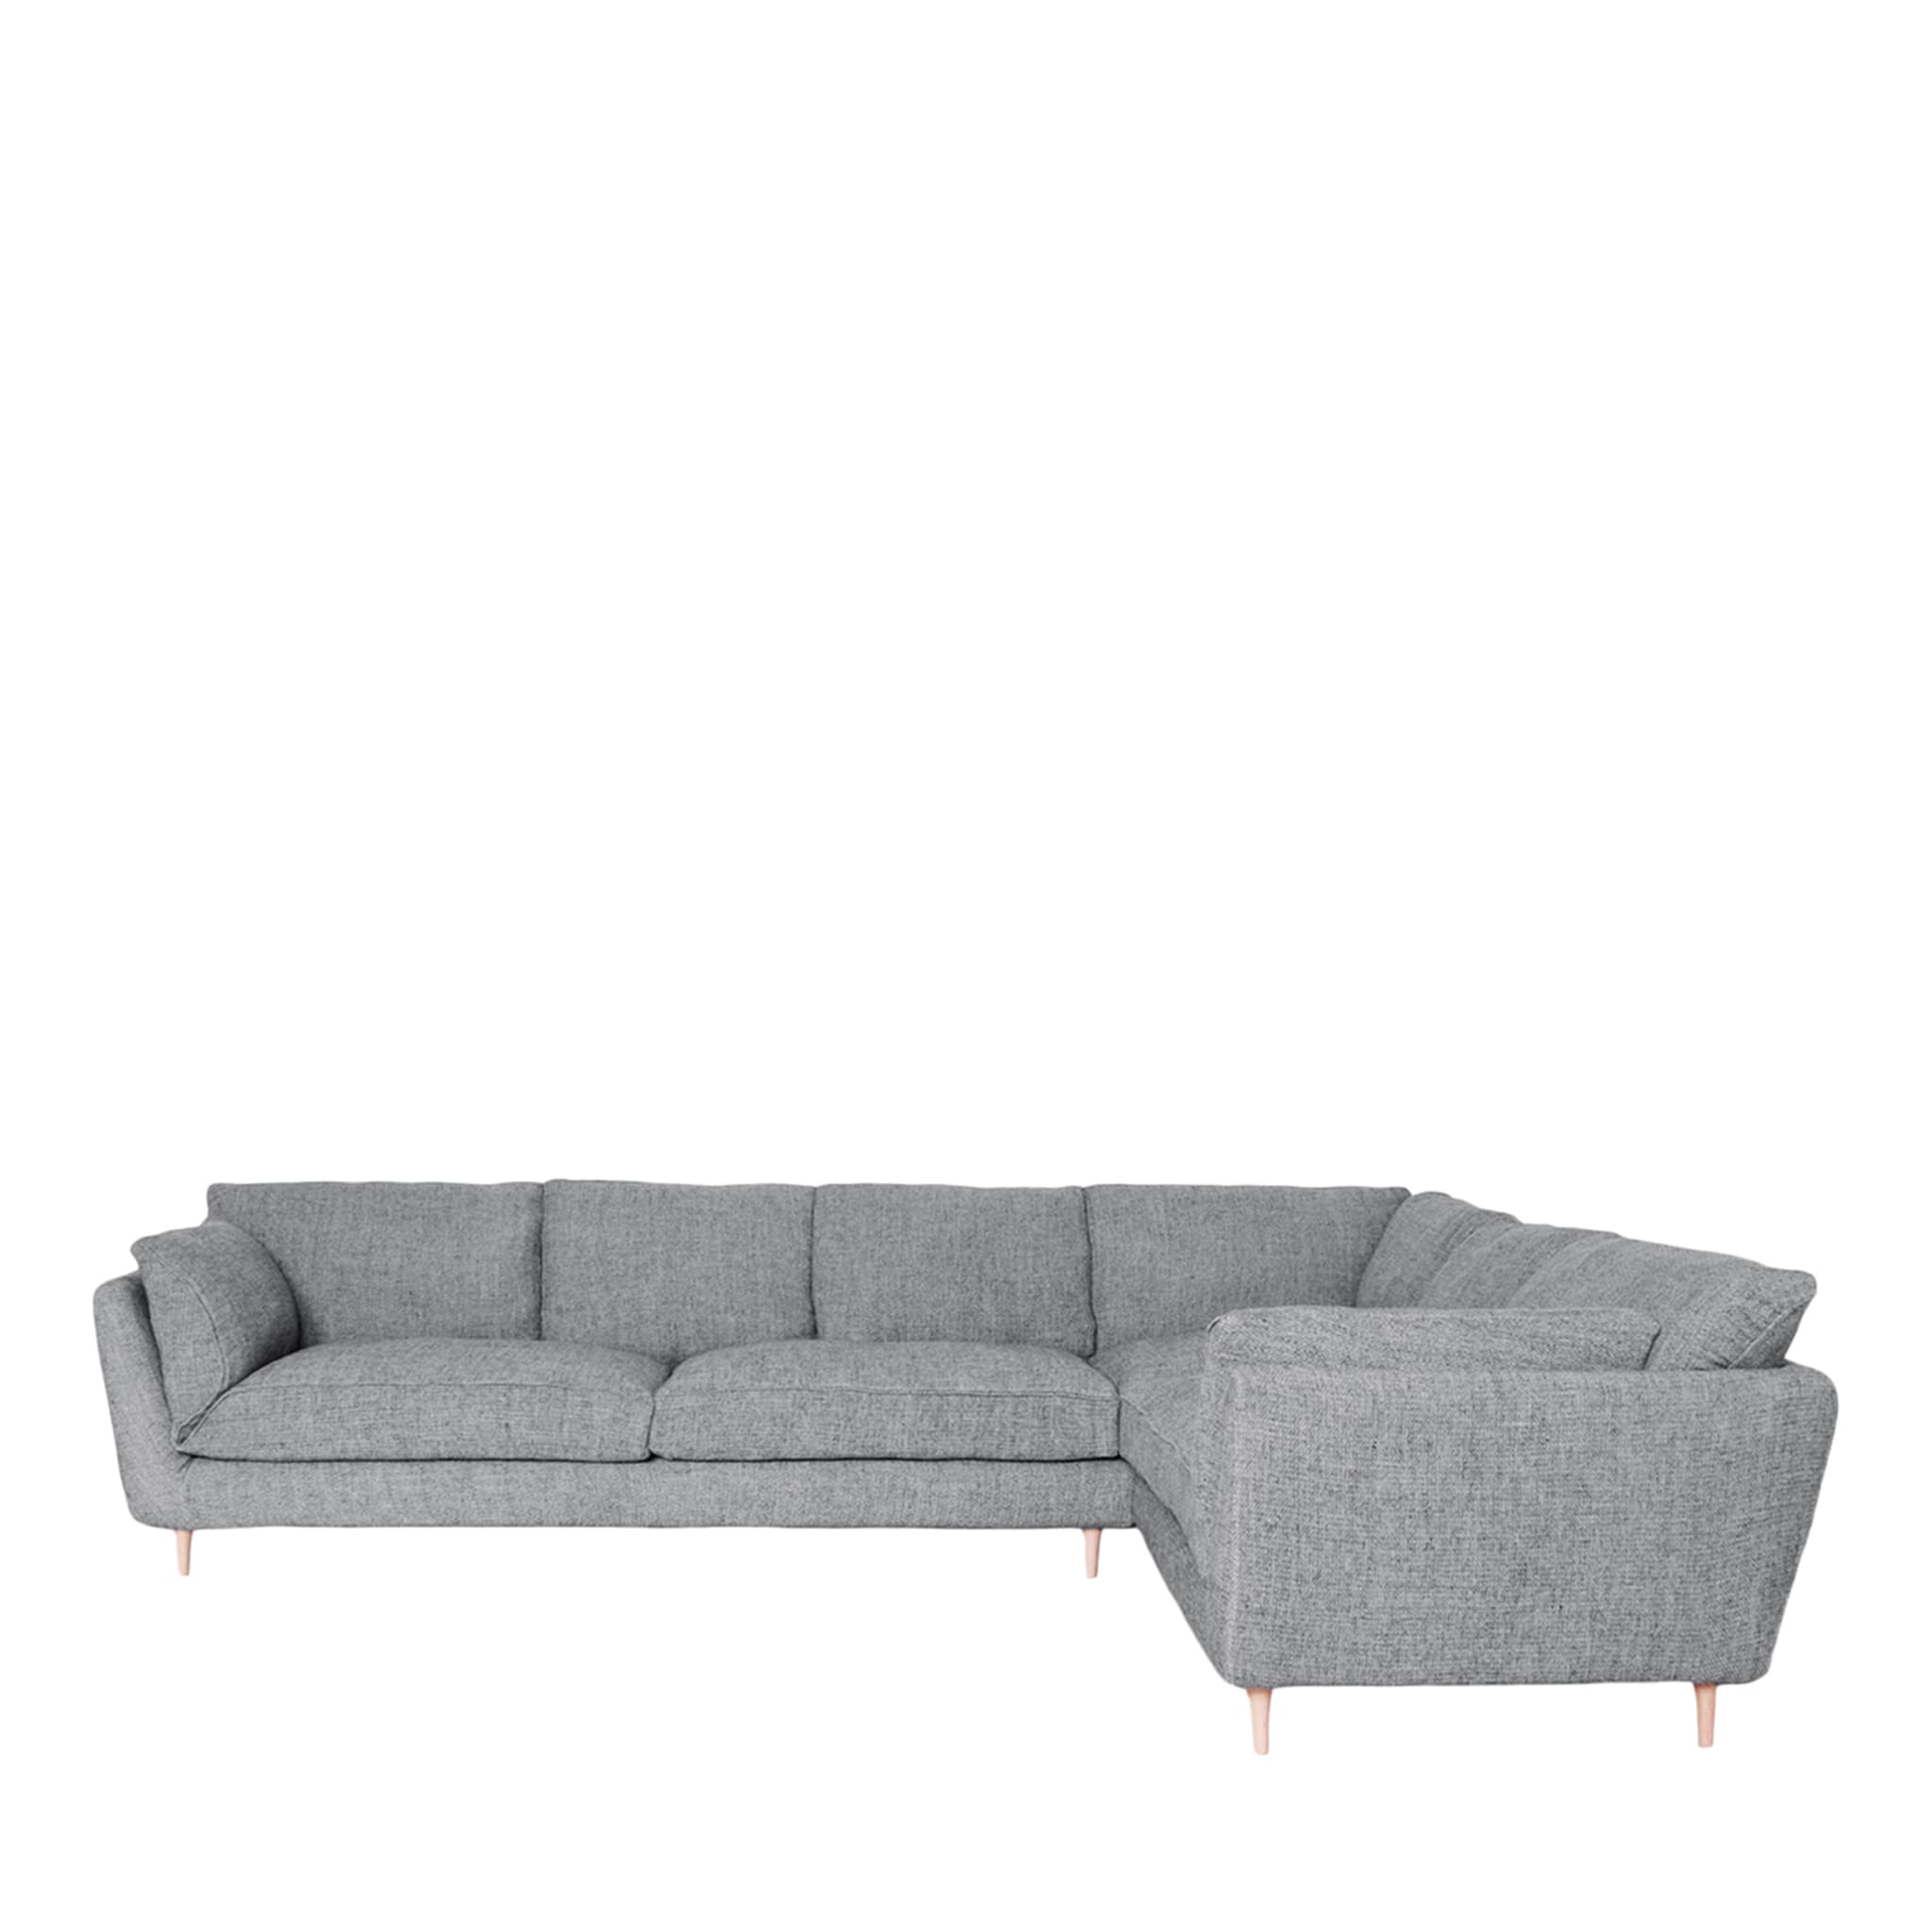 Casquet Maxi Angular Sofa - Main view